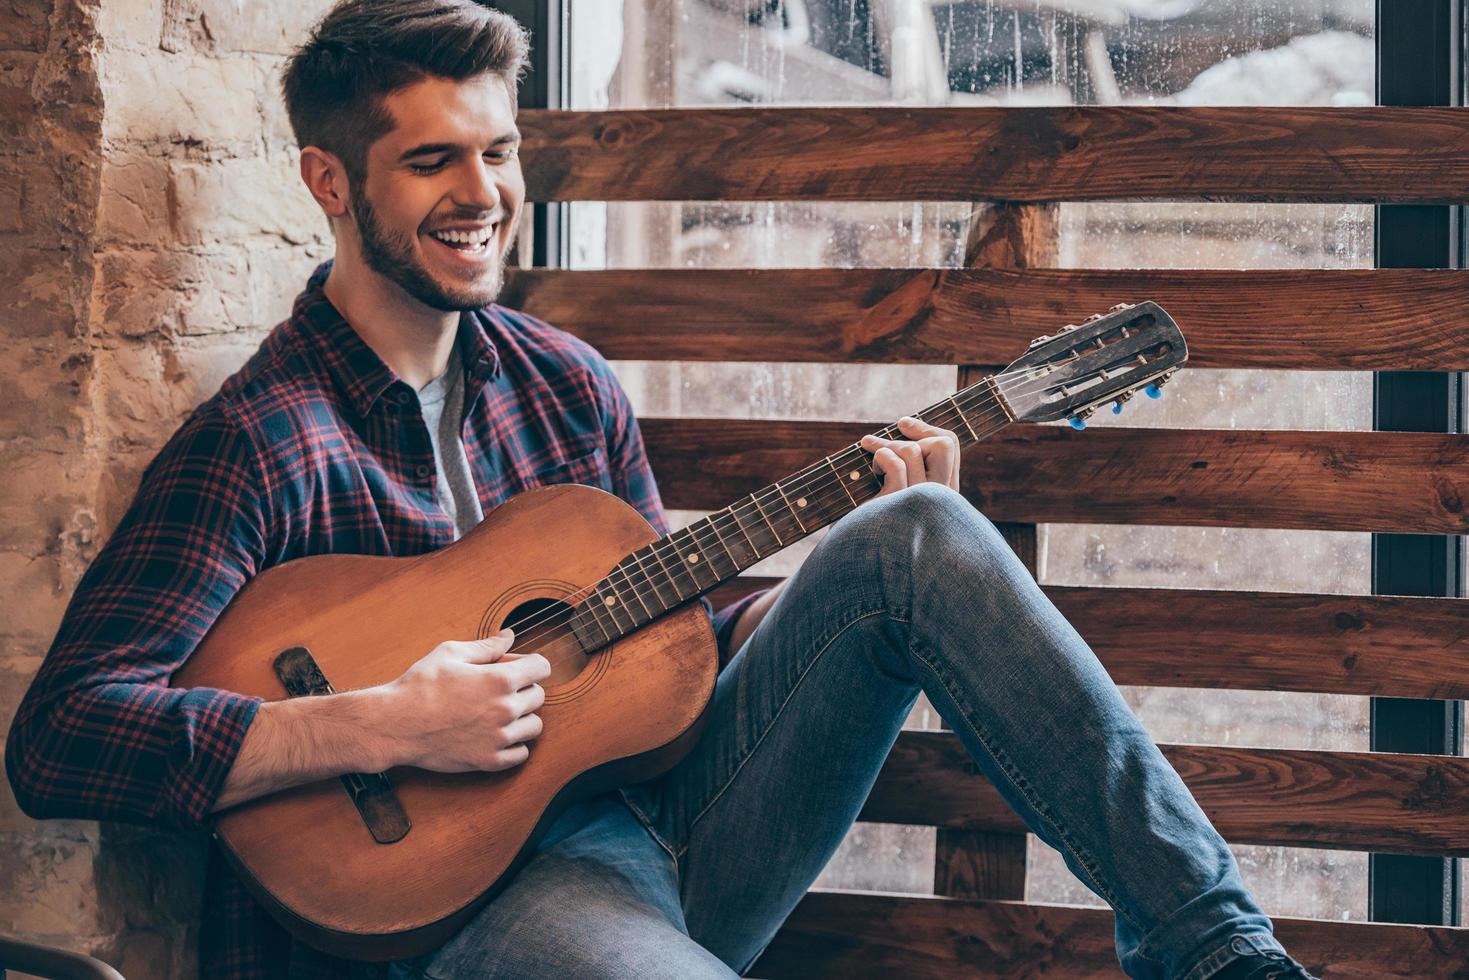 guitarrista alegre. un joven apuesto y alegre tocando la guitarra y sonriendo mientras se sienta en el alféizar de la ventana foto